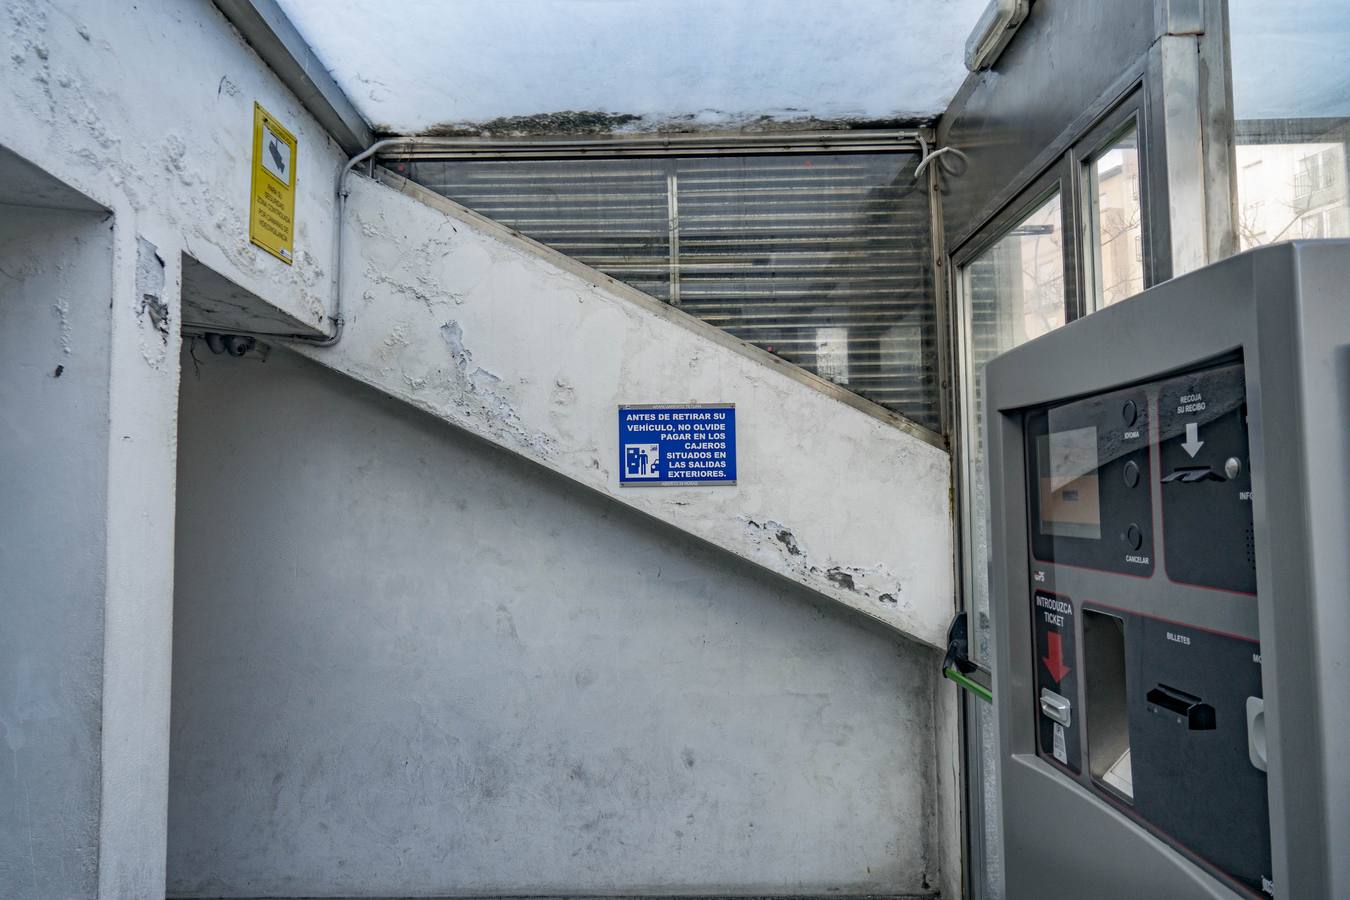 Los parkings subterráneos de Santander ofrecen evidentes muestras de deterioro en sus instalaciones.